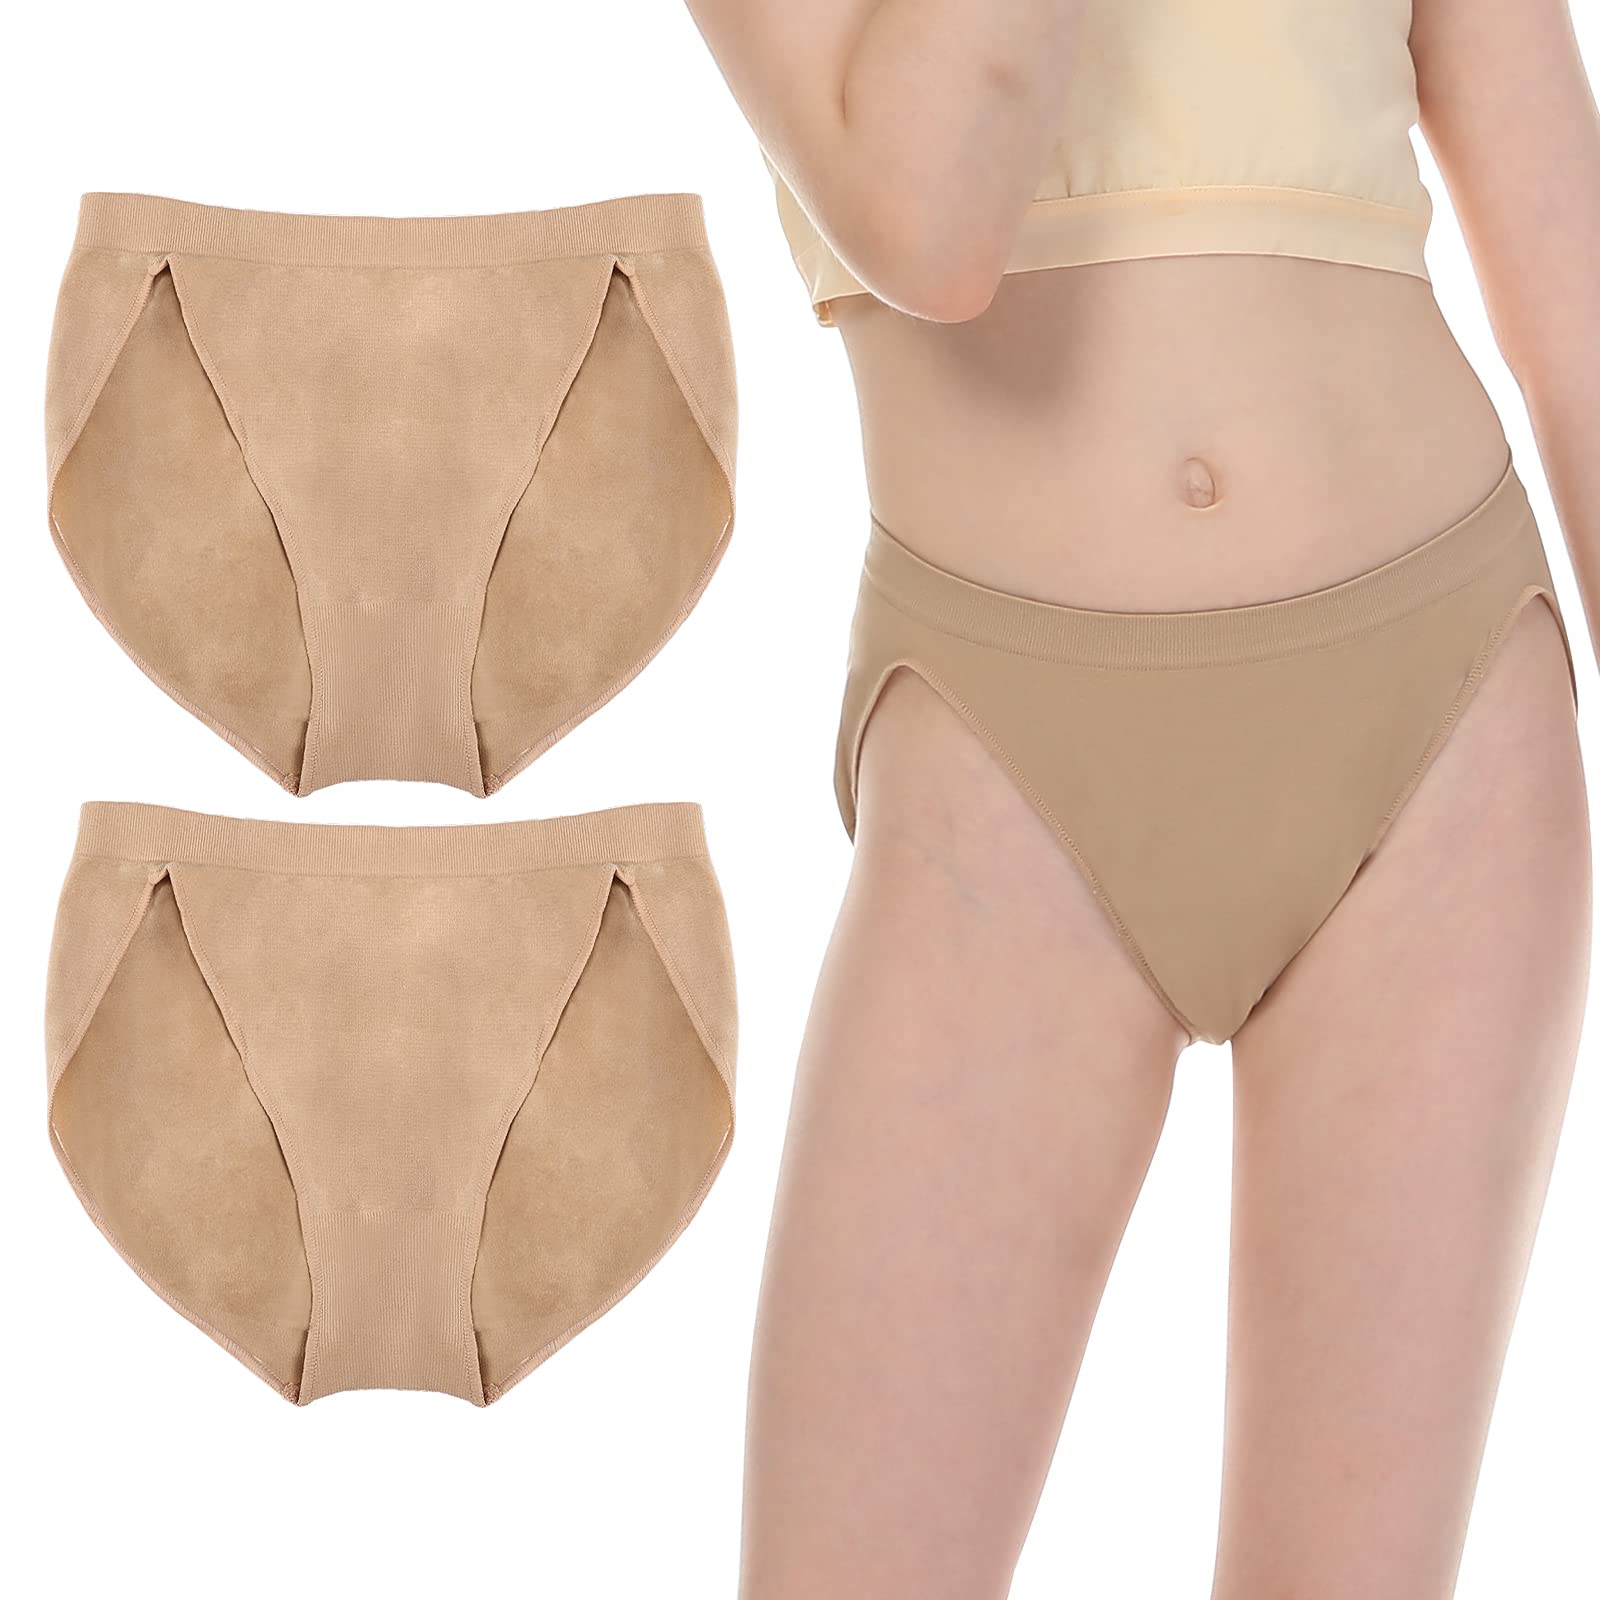 Spandex Ballet Dance Underwear, Nylon Ballet Dance Underwear